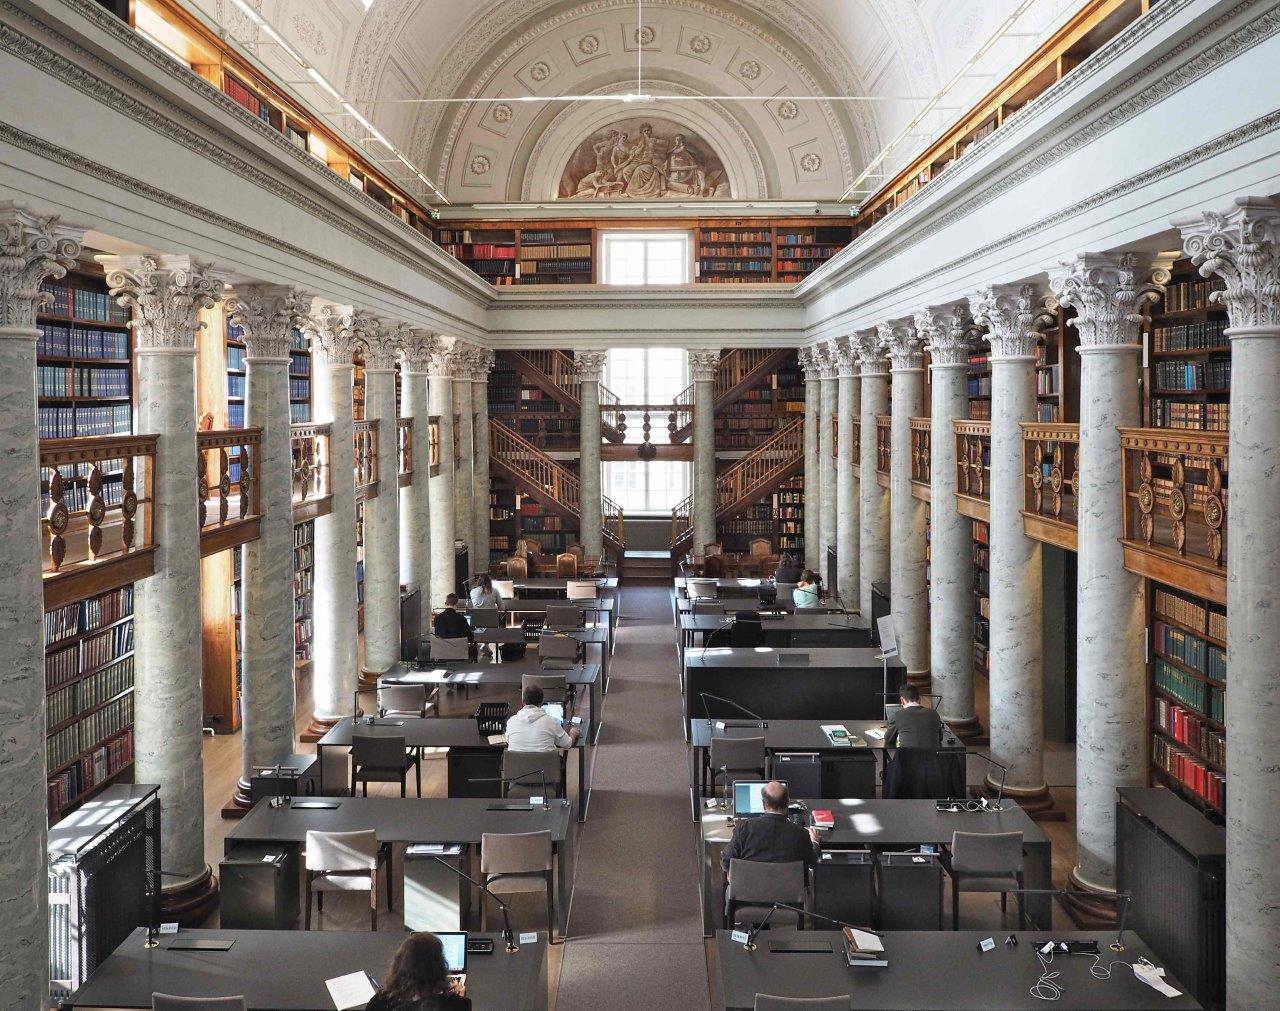 Yliopiston kirjasto, Kansalliskirjasto, eteläinen lukusali. Wiki Loves Monuments, CC BY-SA 4.0 Marit Henriksson 2017